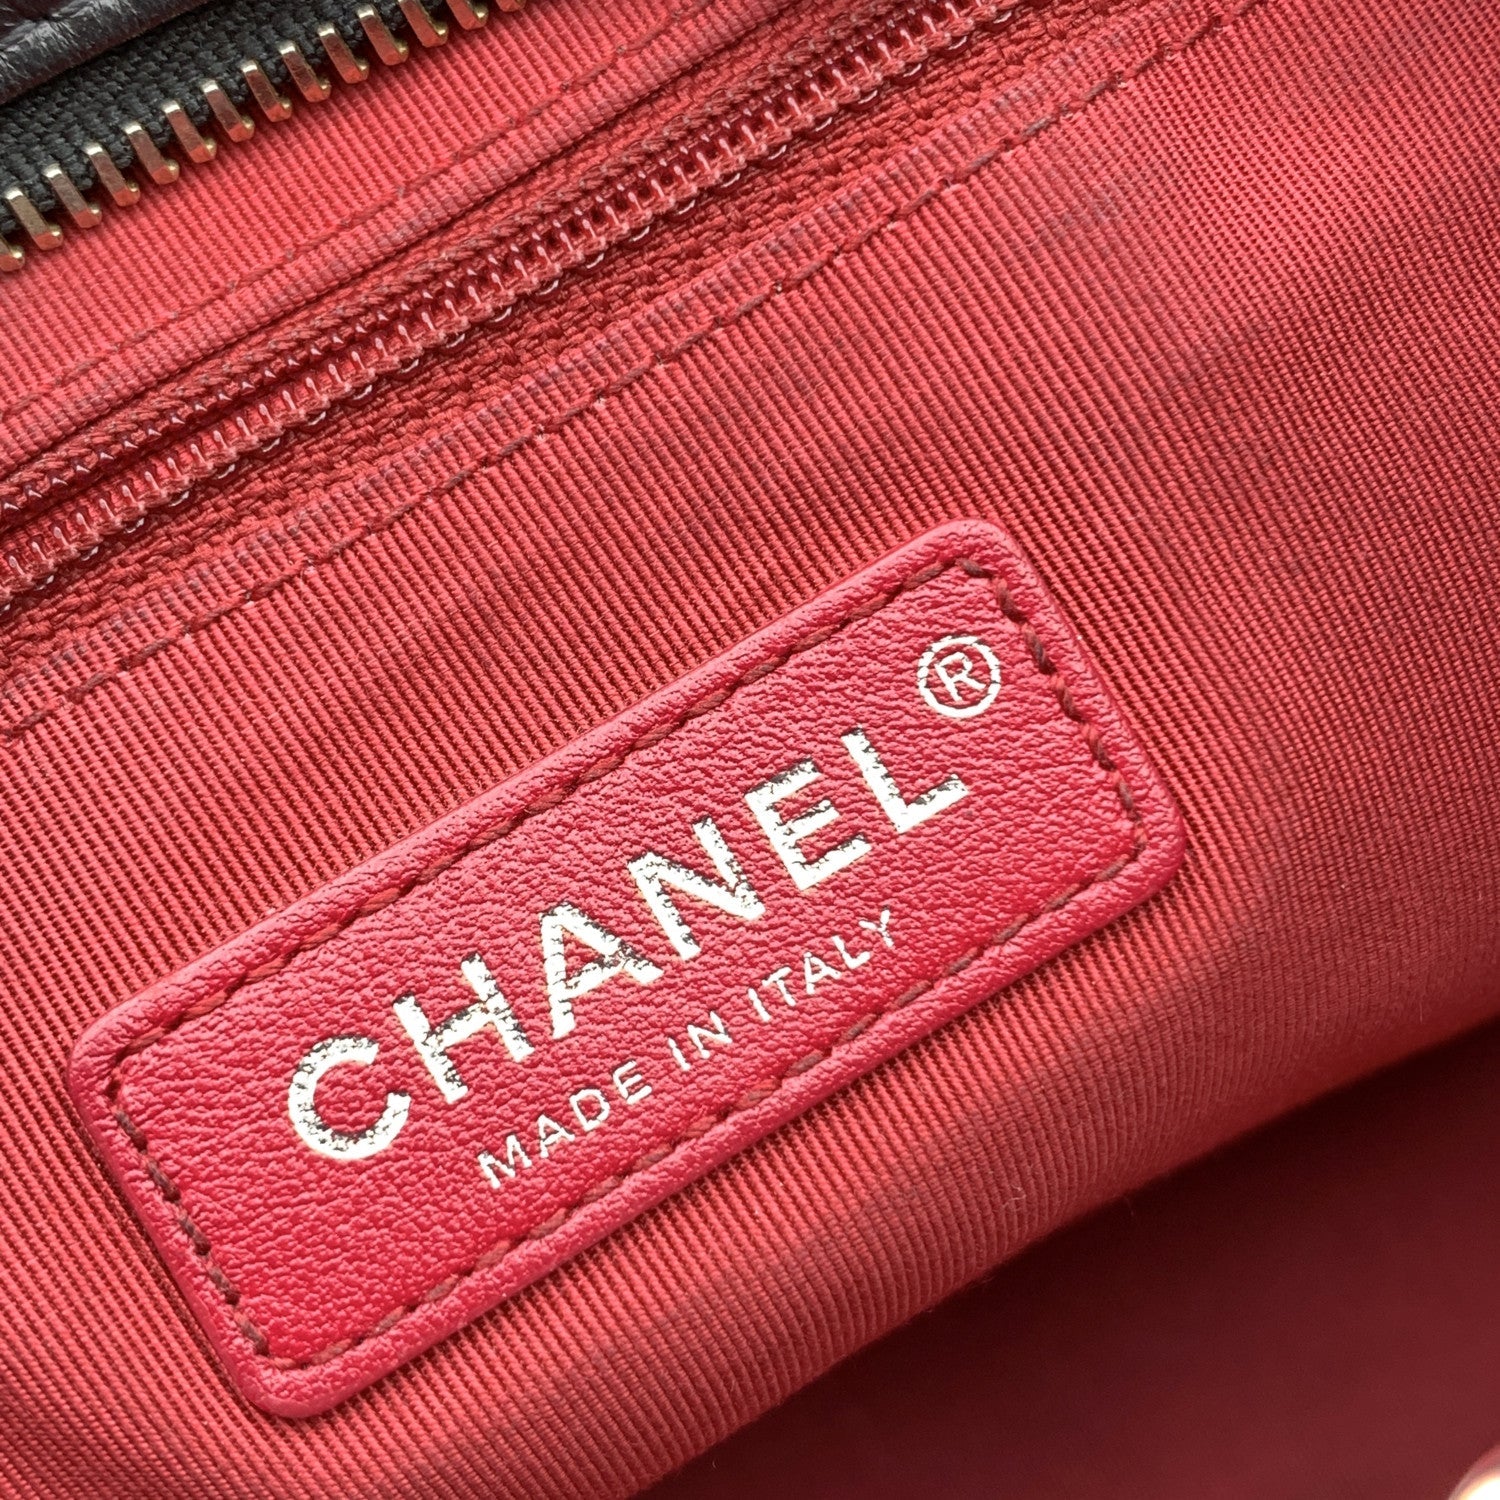 CHANEL Shoulder Bags